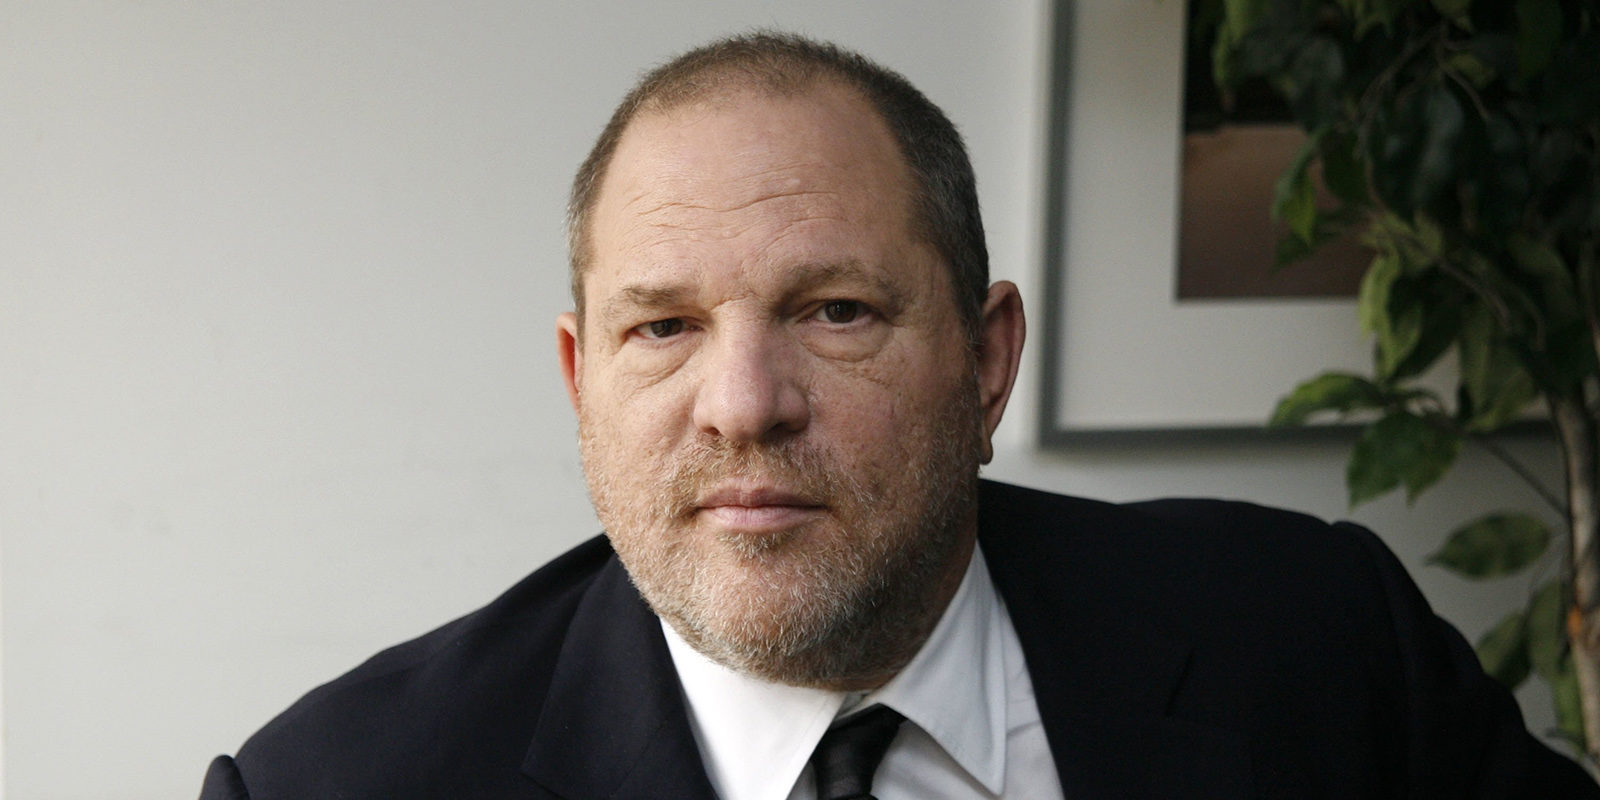 Harvey Weinstein no podría ser despedido por acusaciones de acoso sexual según su contrato